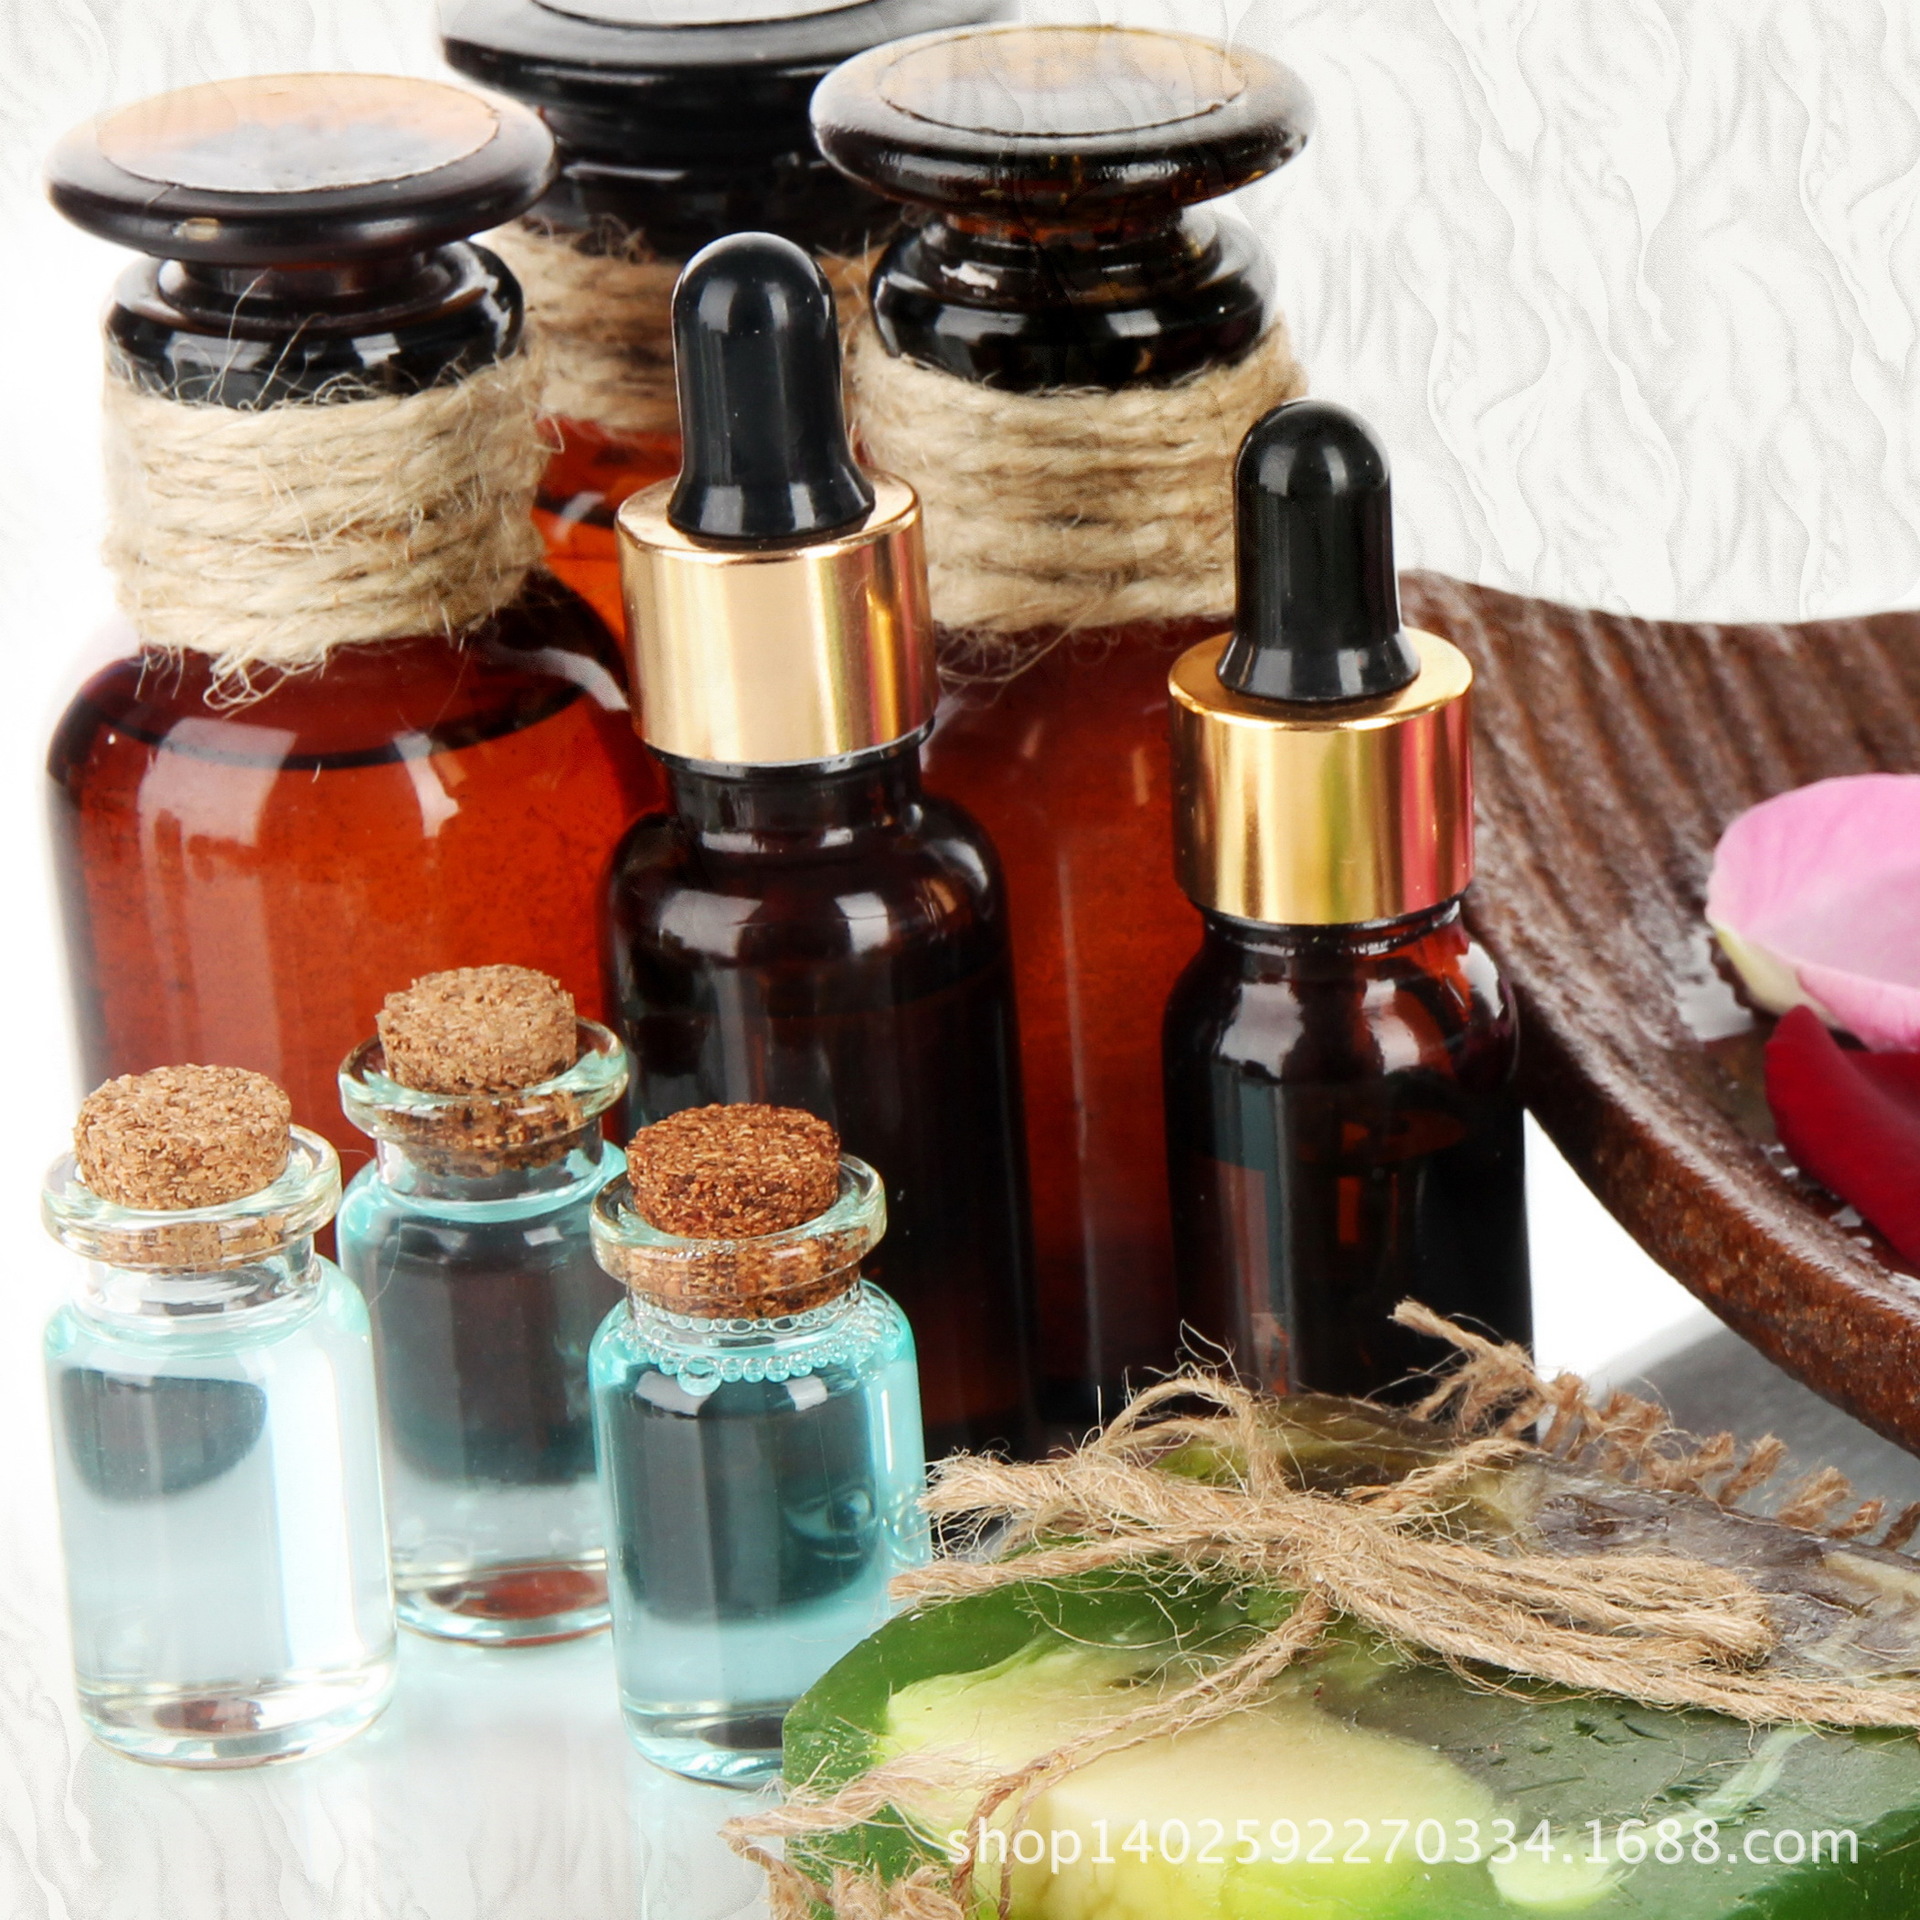 合成香料 spa香精丨薰衣草香精丨厂直销丨香味自然,纯正,持久丨不含